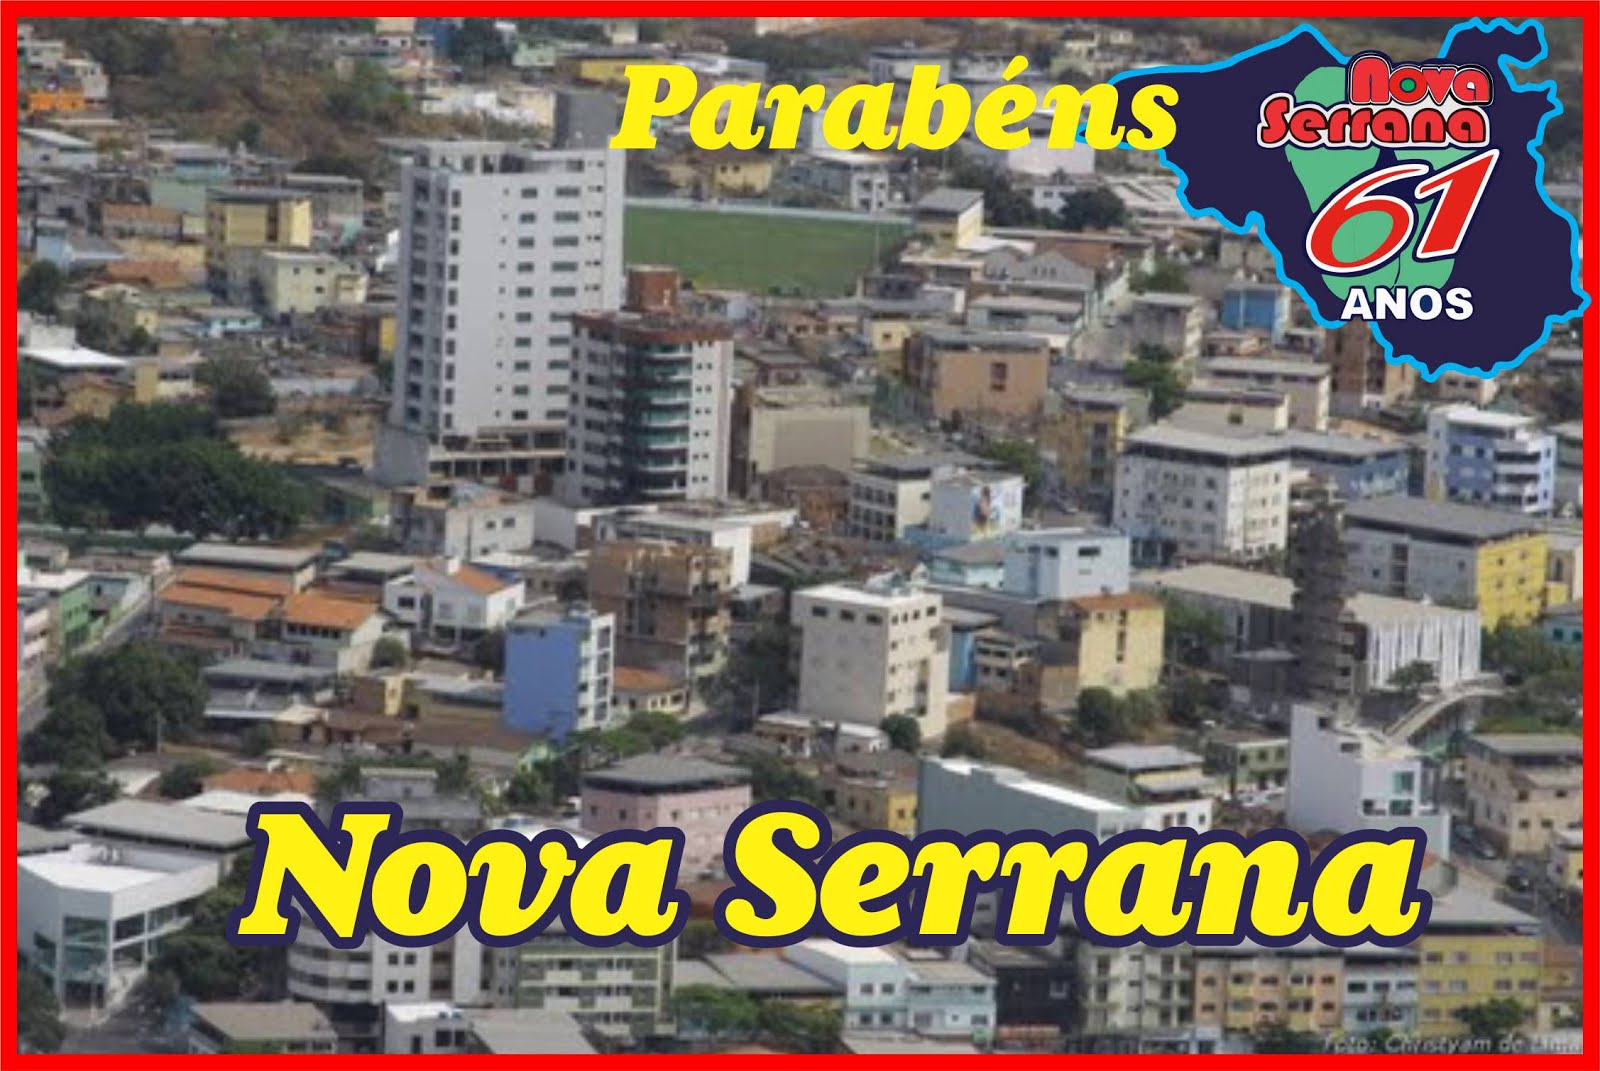 Nova Serrana - Minas Gerais